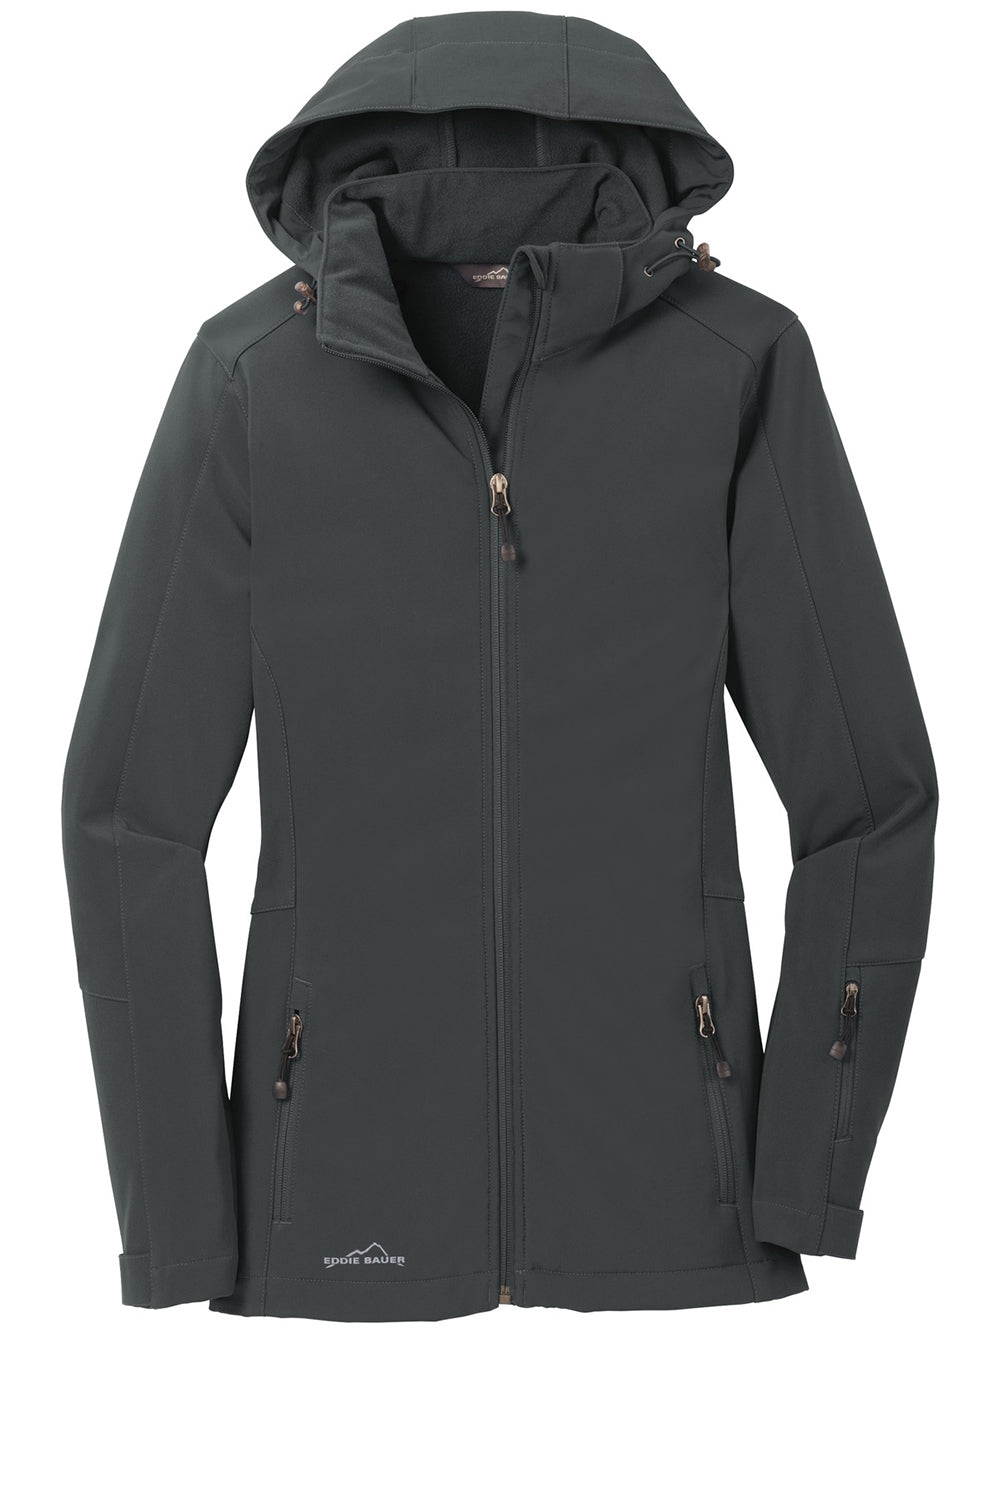 Eddie Bauer EB537 Womens Water Resistant Full Zip Hooded Jacket Steel Grey Flat Front